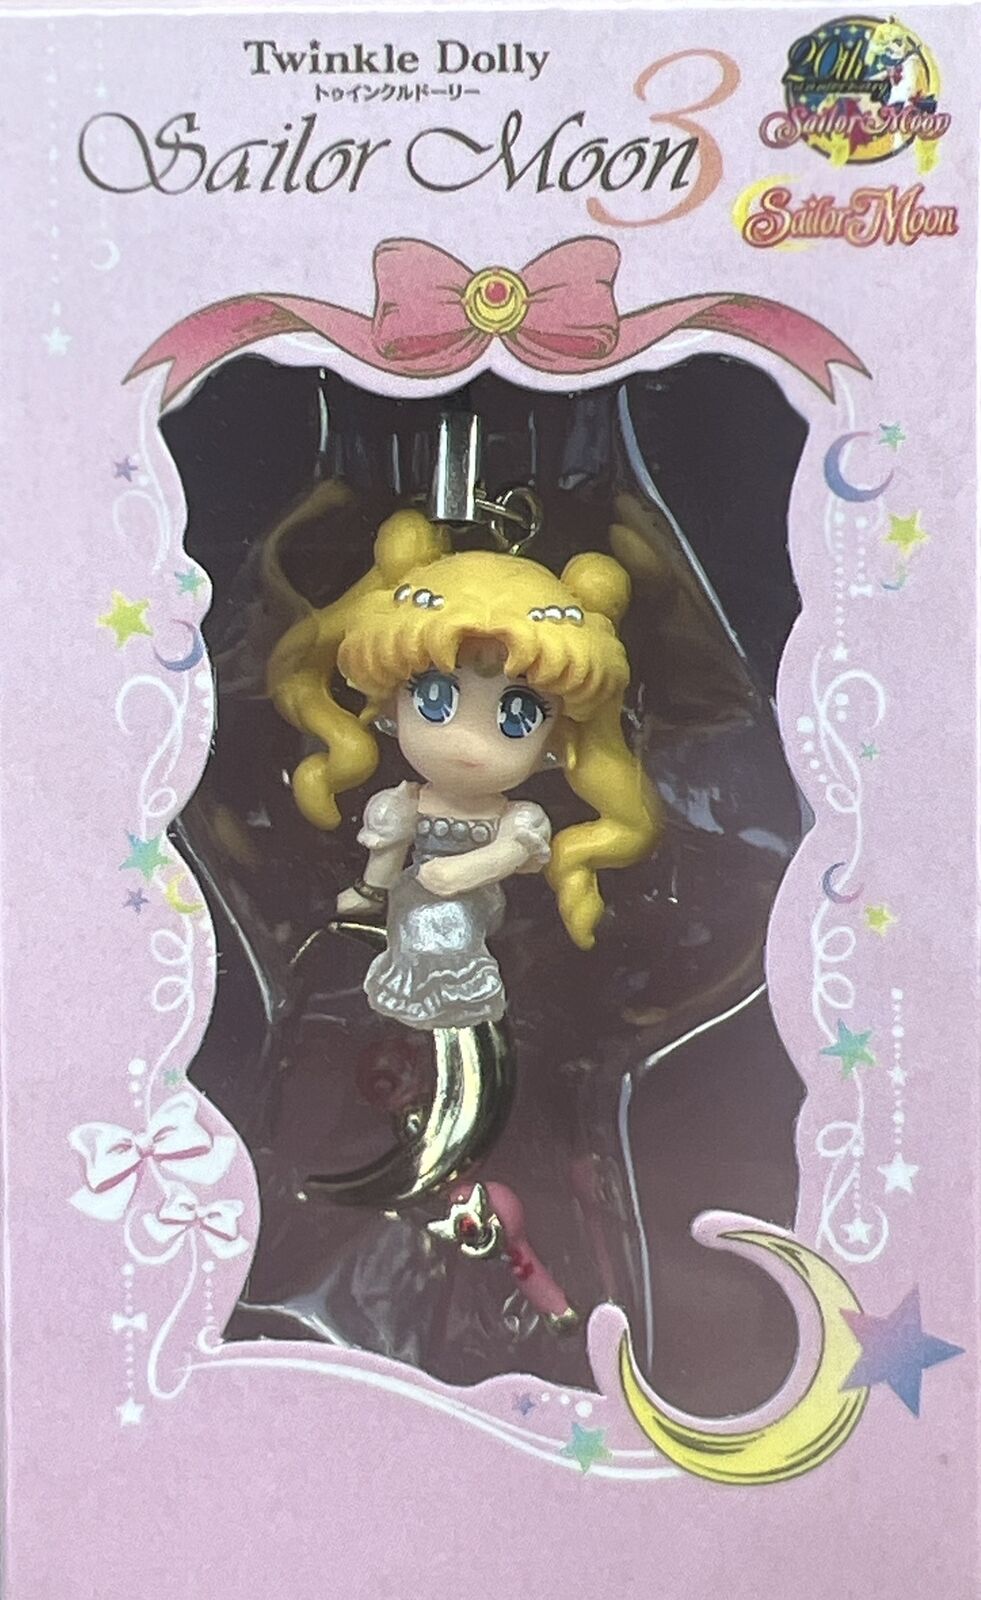 Bandai Sailor Moon 20th Anniversary Twinkle Dolly Princess Serenity Moon Japan